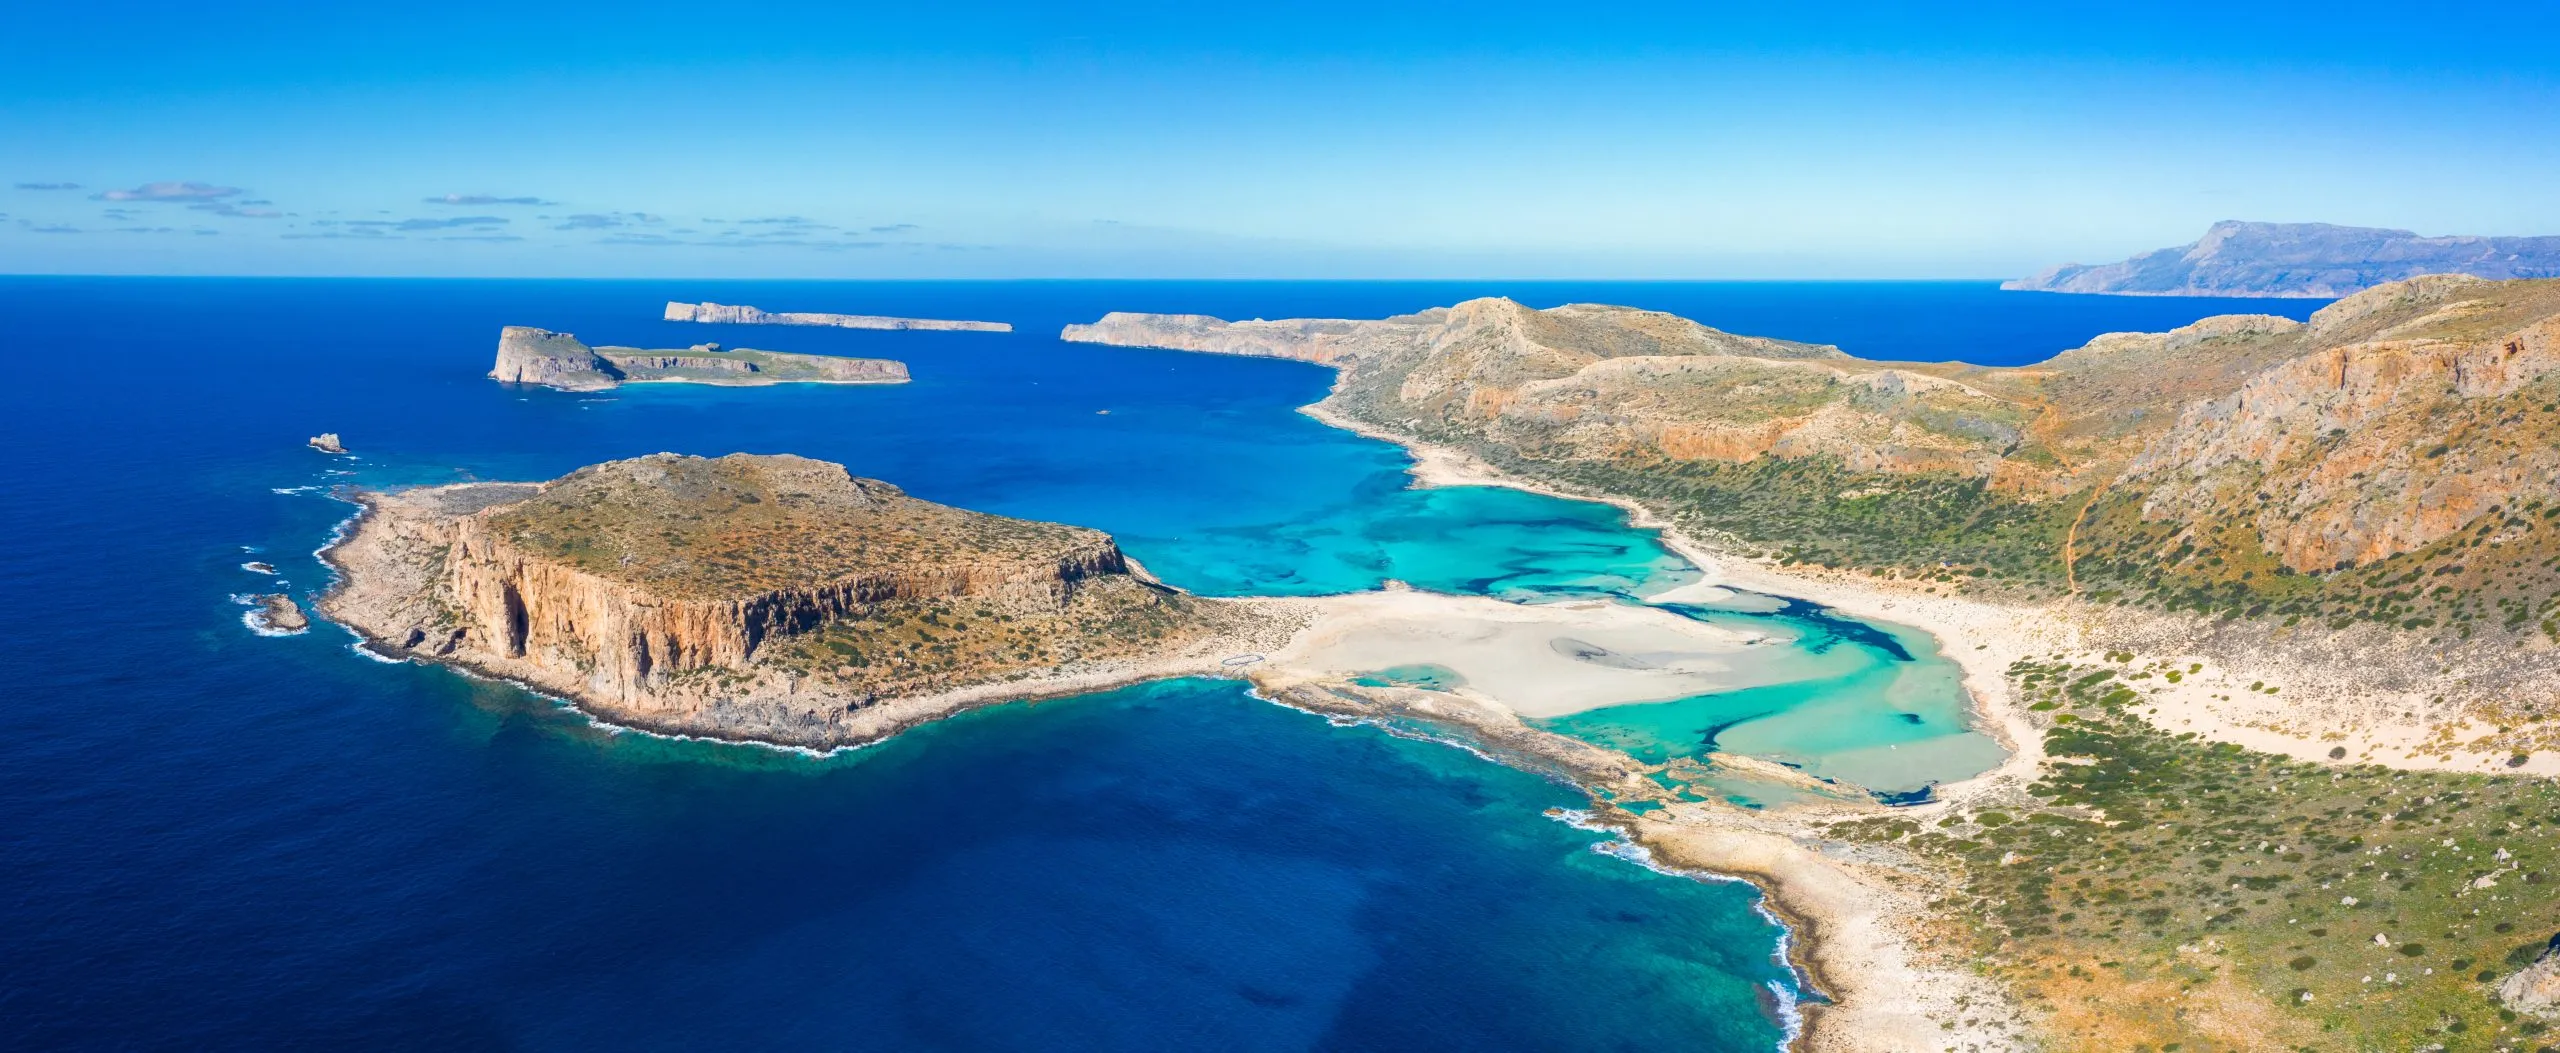 Καταπληκτική θέα της λιμνοθάλασσας του Μπάλου με μαγευτικά γαλαζοπράσινα νερά, λιμνοθάλασσες, τροπικές παραλίες με καθαρή λευκή άμμο και το νησί Γραμβούσα στην Κρήτη, Ελλάδα